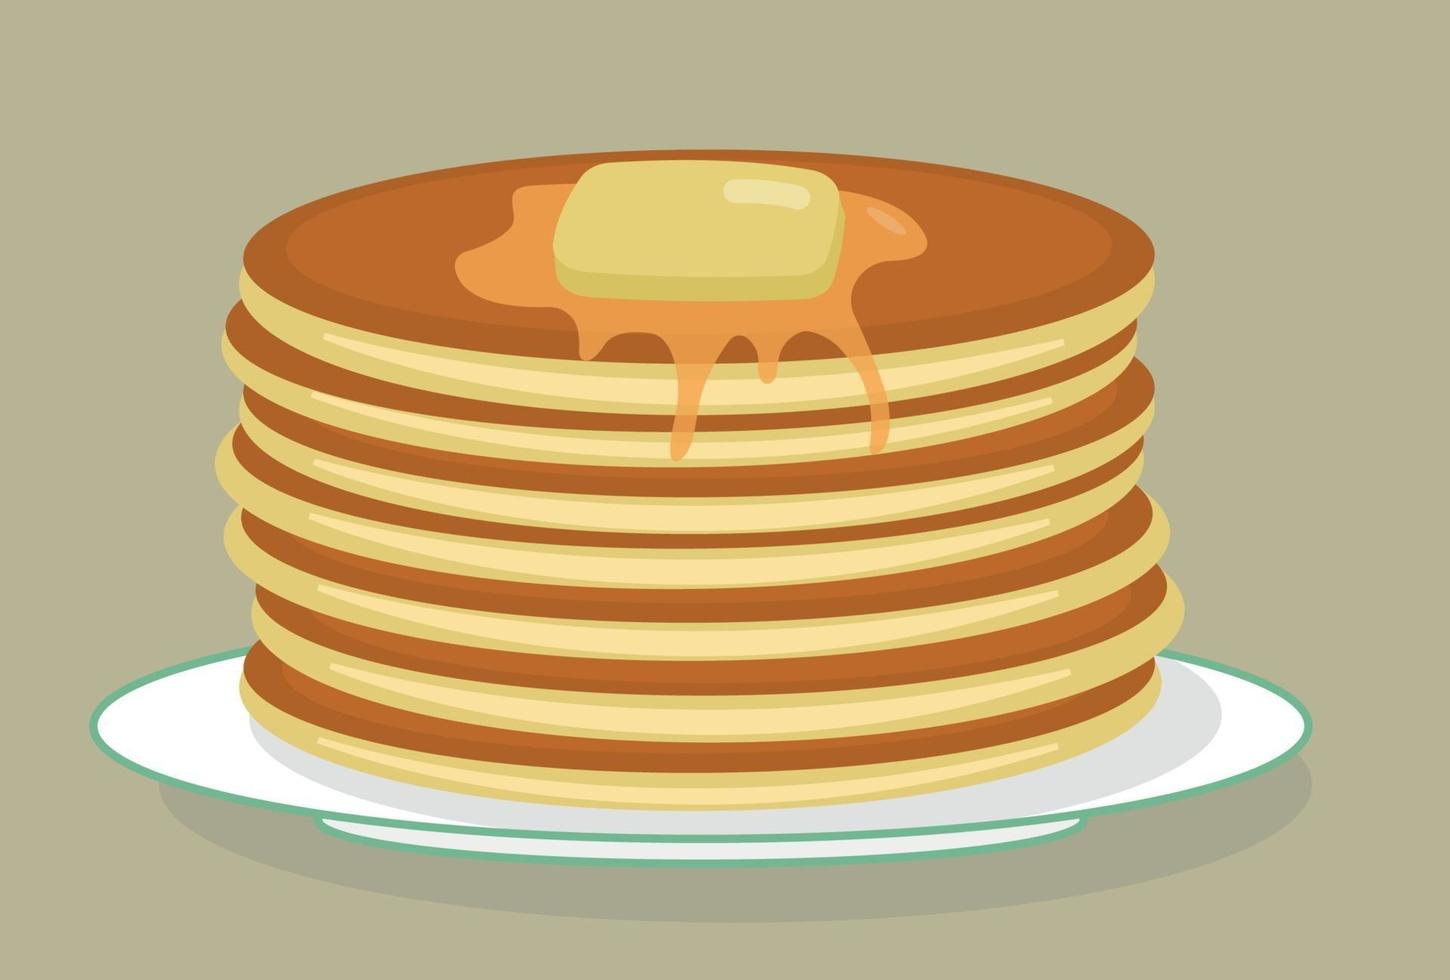 stapel lekkere Amerikaanse pannenkoeken op een bord met boter en honing, siroop. stuk. Maslenitsa. platte vectorillustratie vector